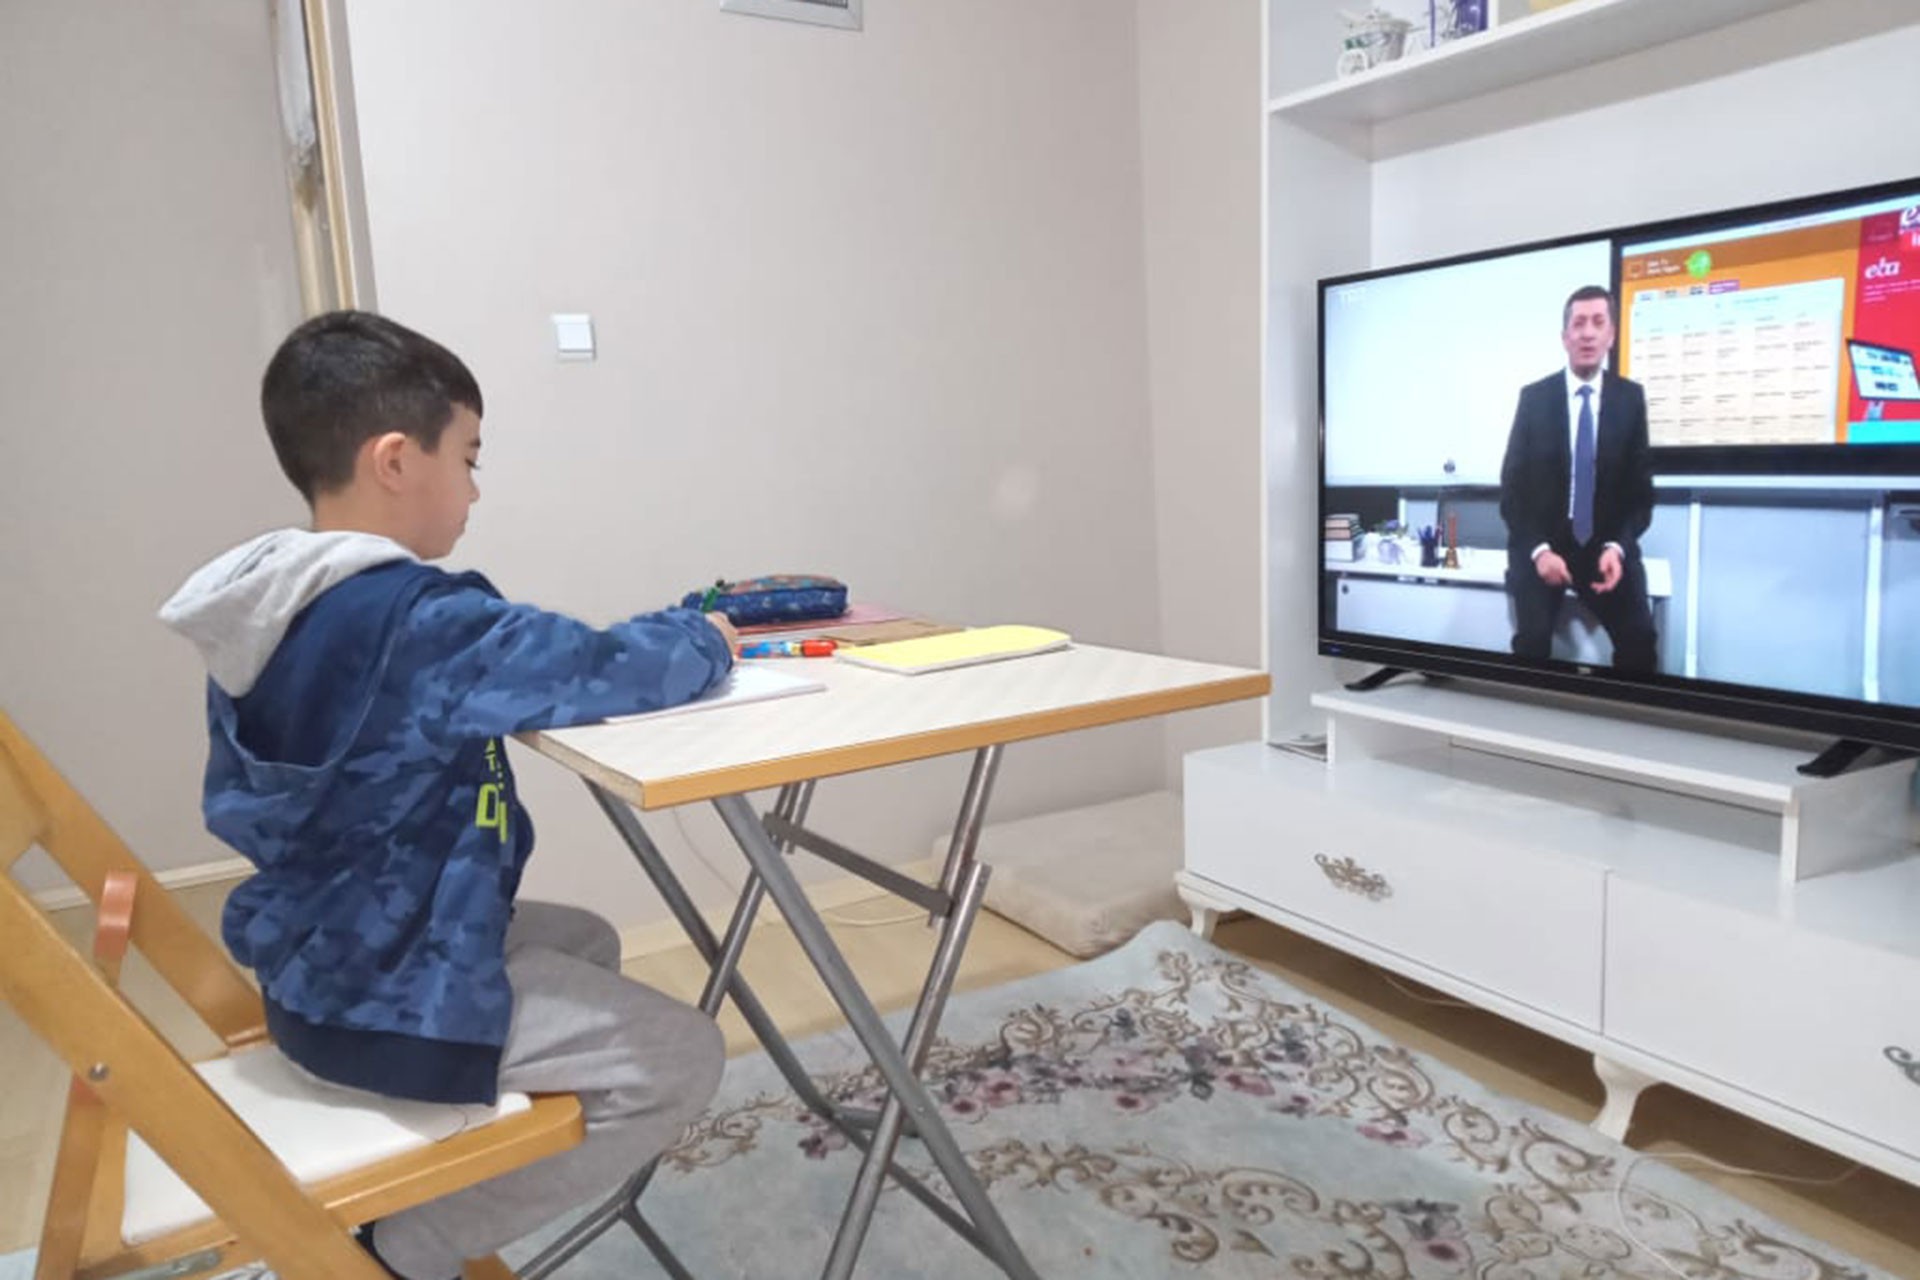 EBA TV'yi izleyen çocuk (solda)